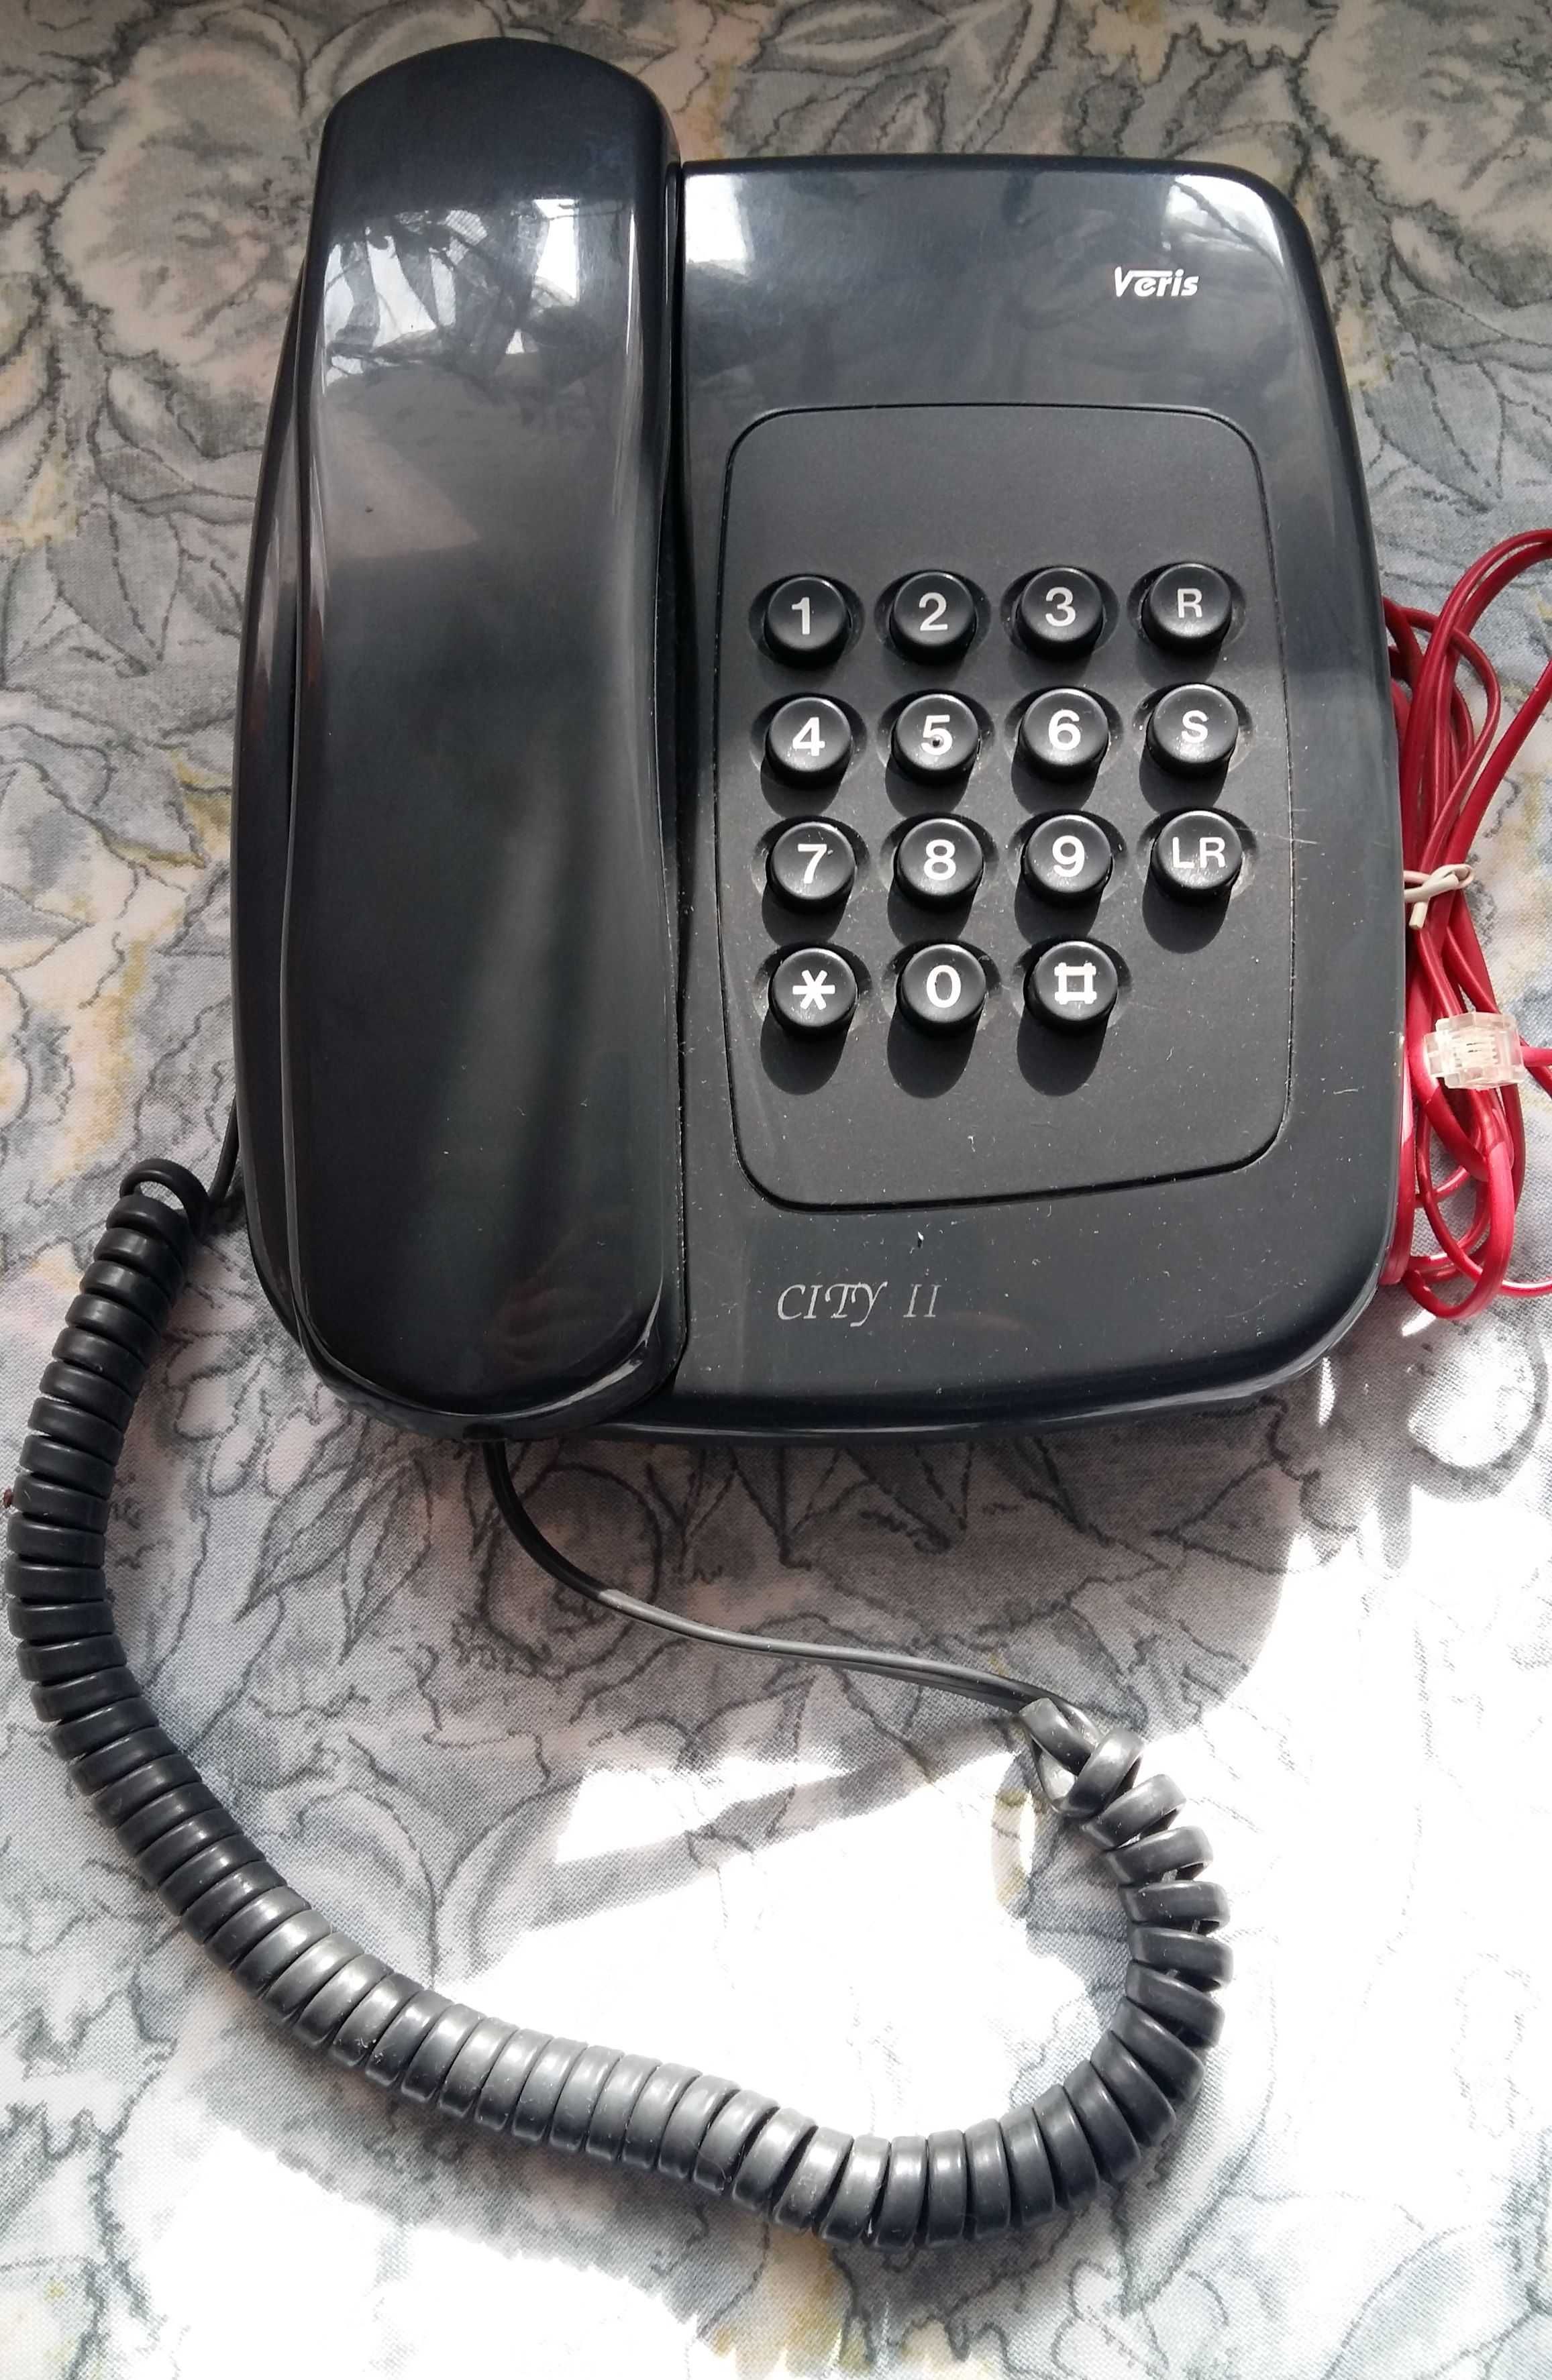 Telefon stacjonarny VERIS City II sprawny z kablem.